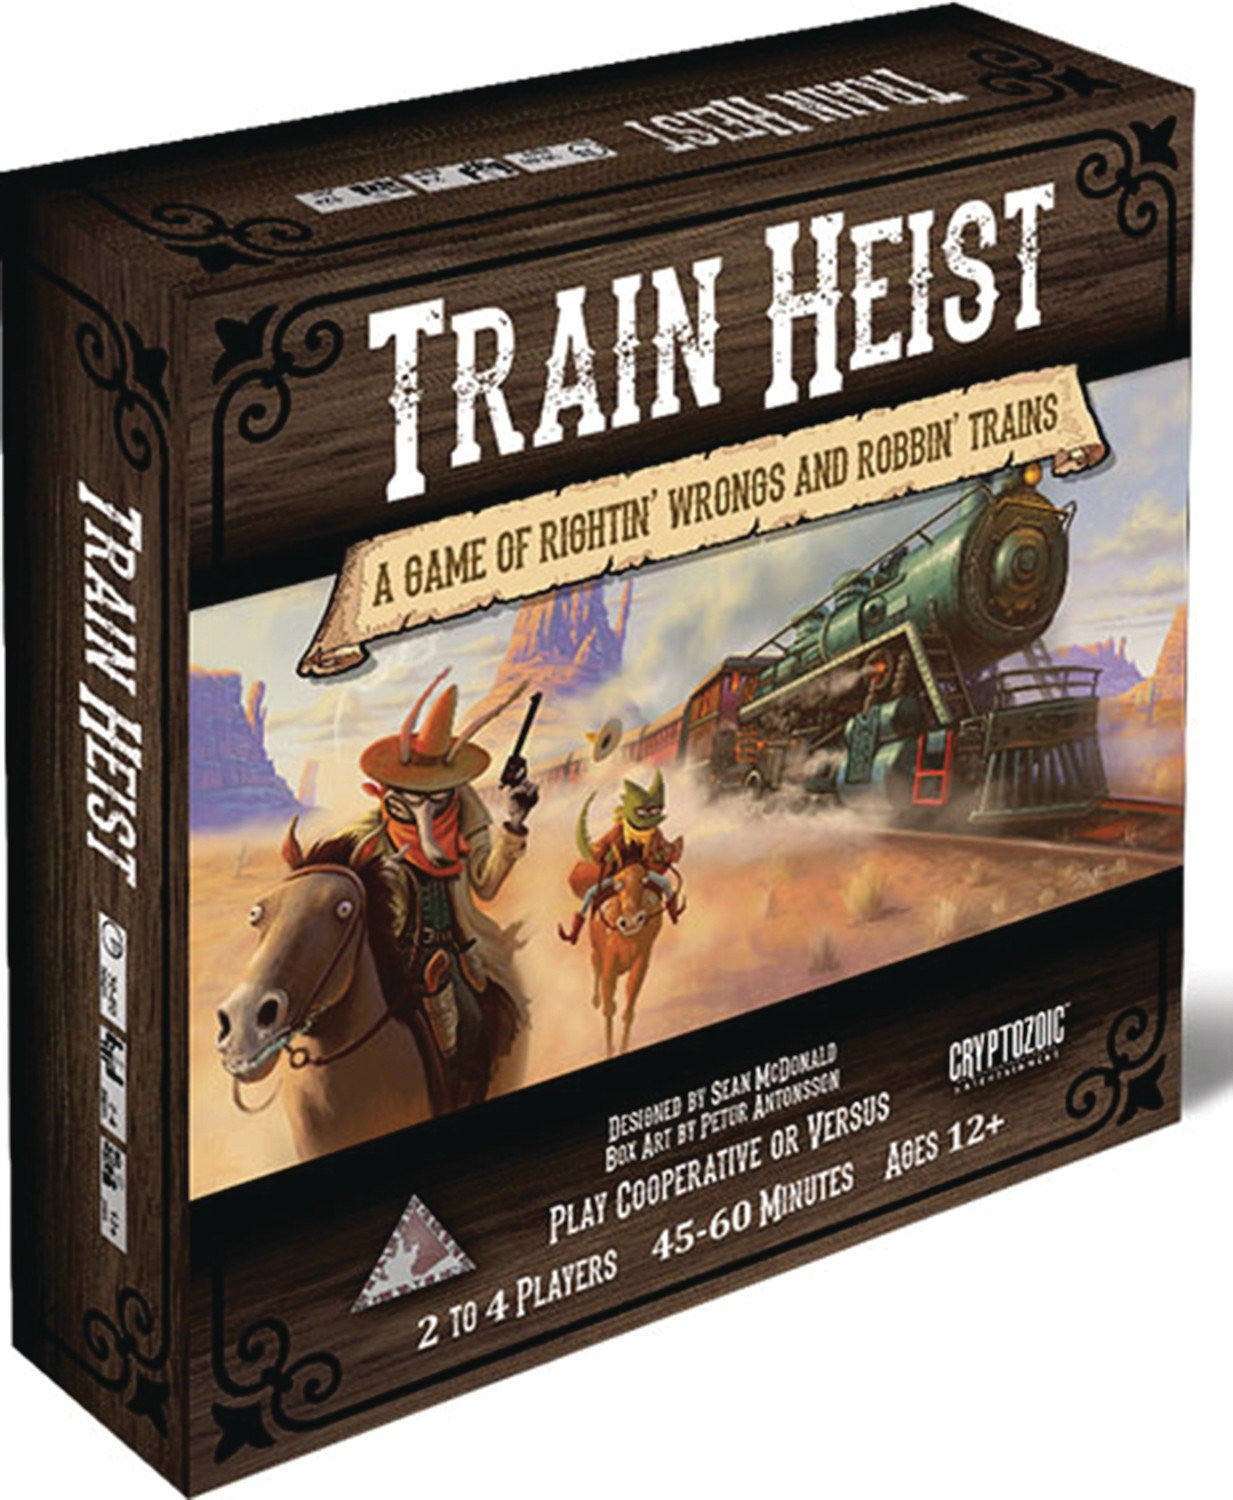 TRAIN HEIST BOARD GAME